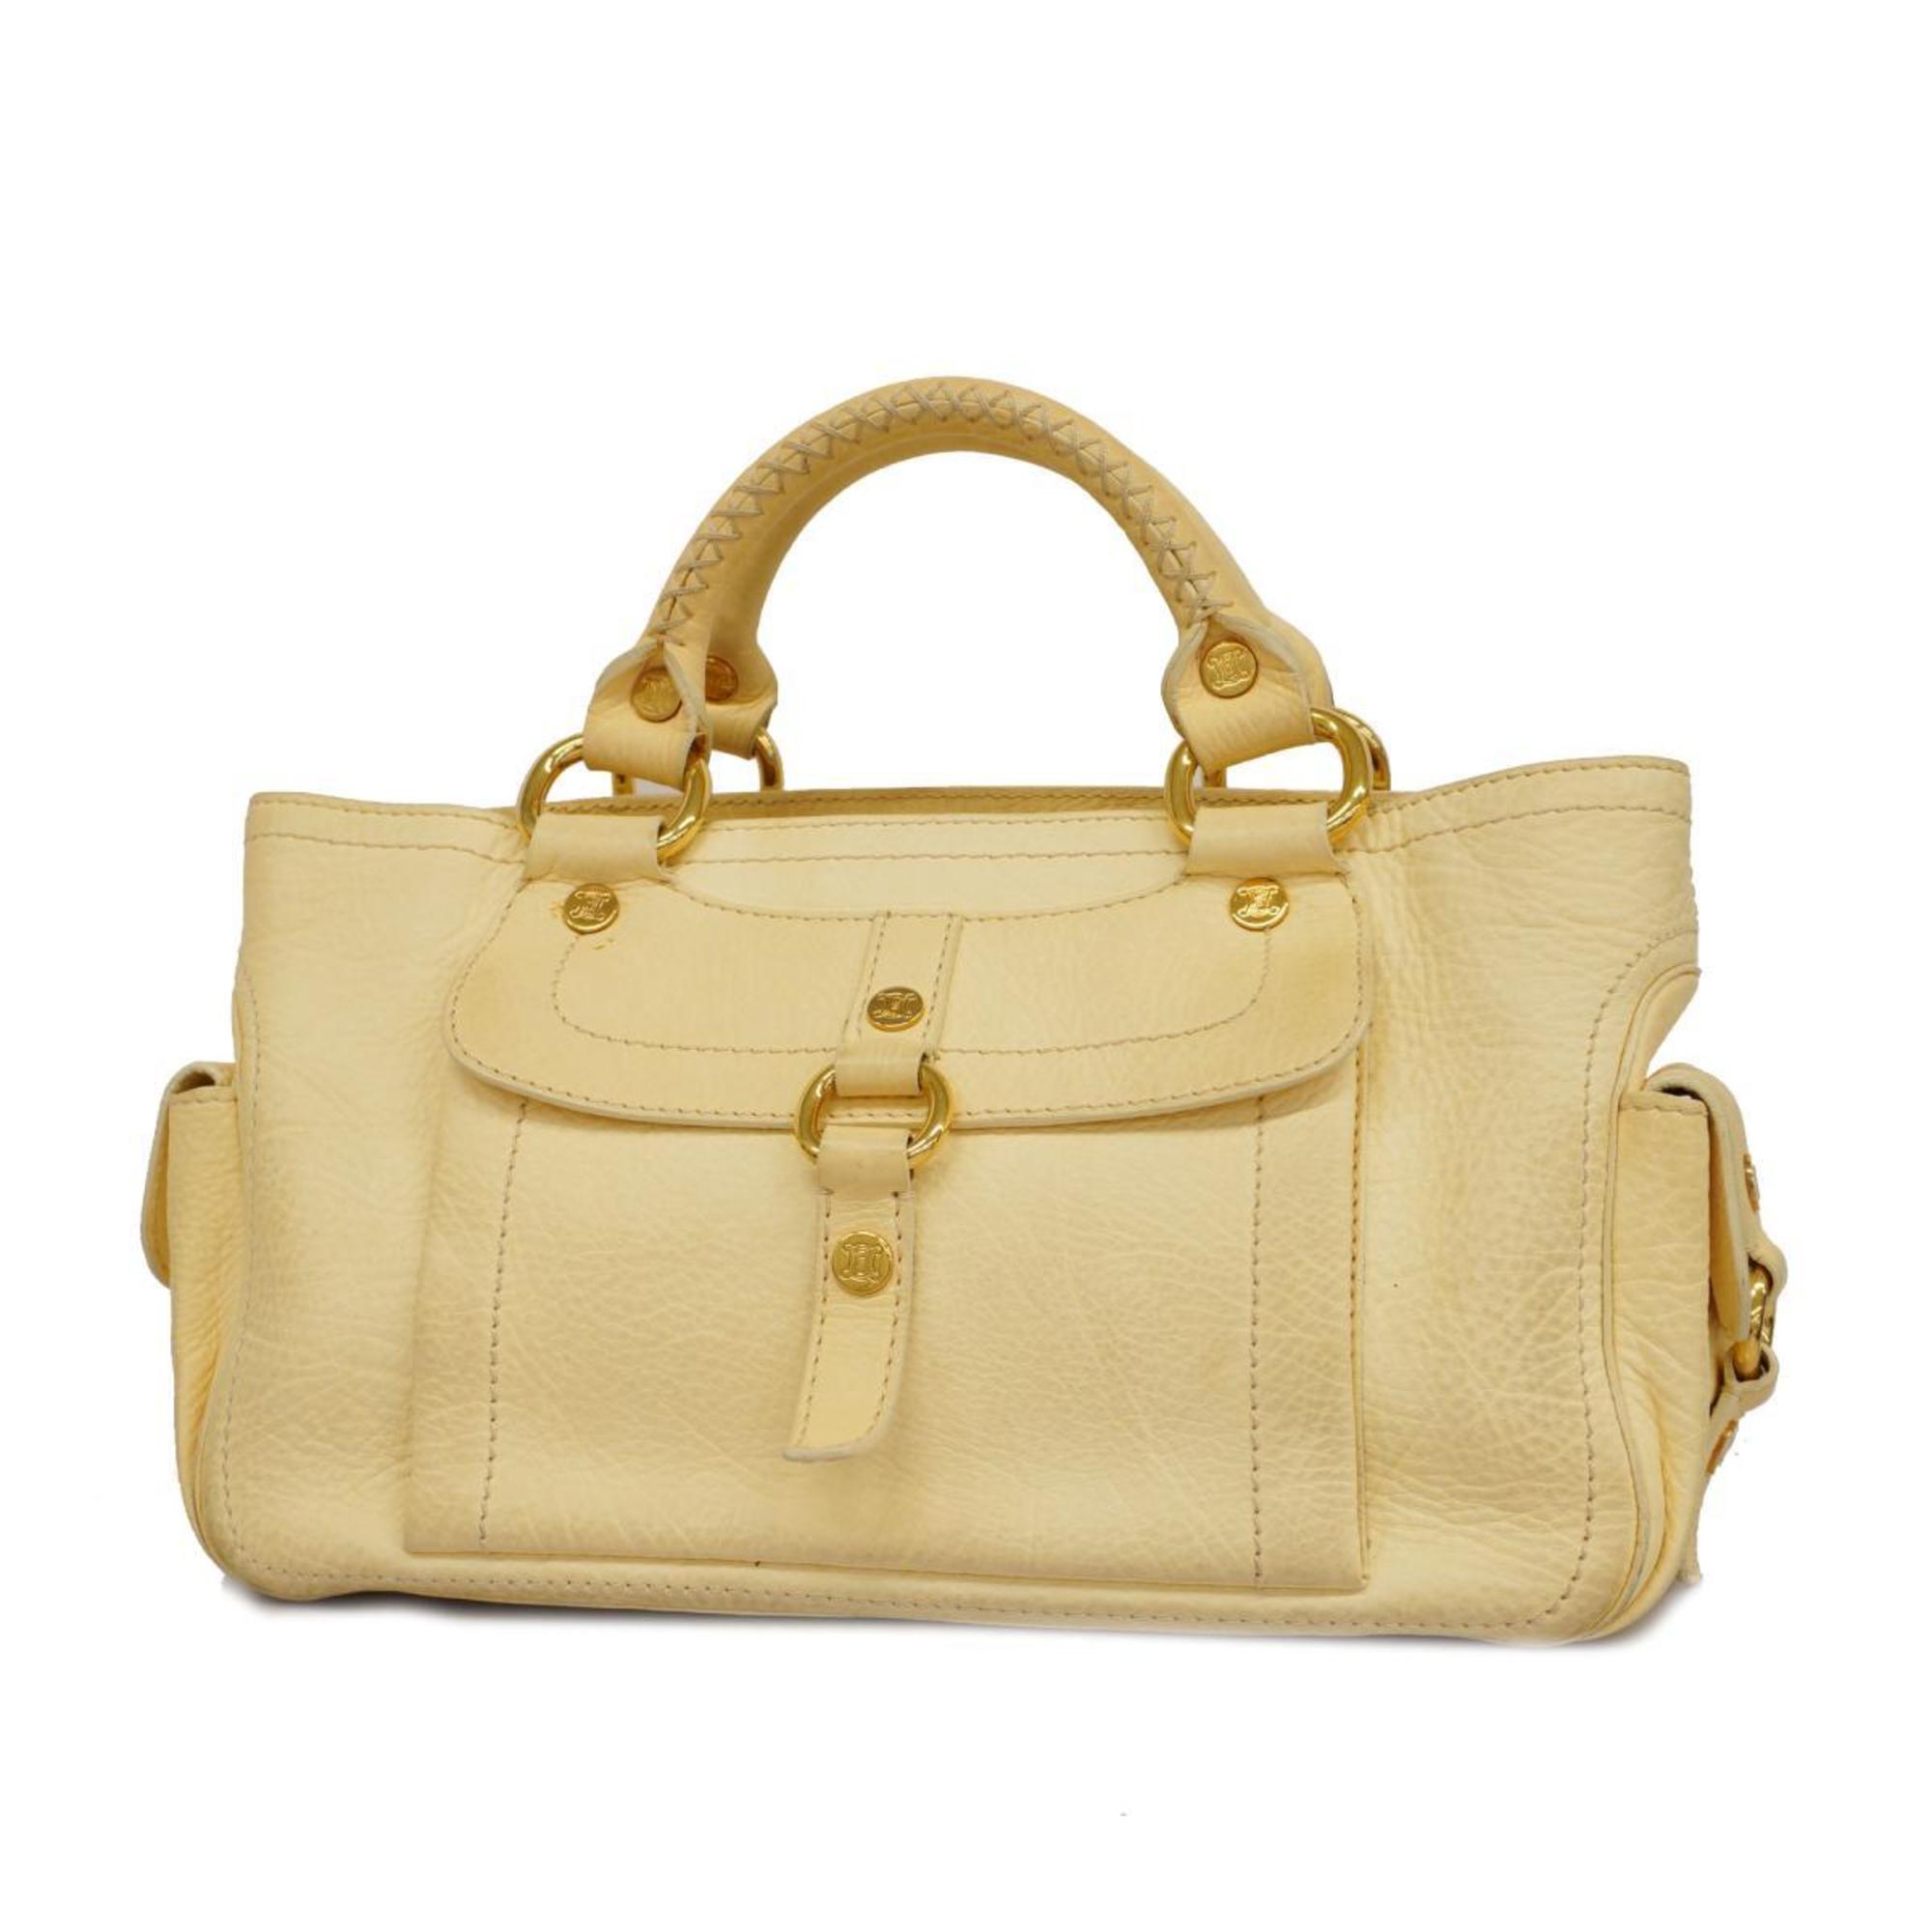 image of CELINE handbag boogie leather cream yellow ladies